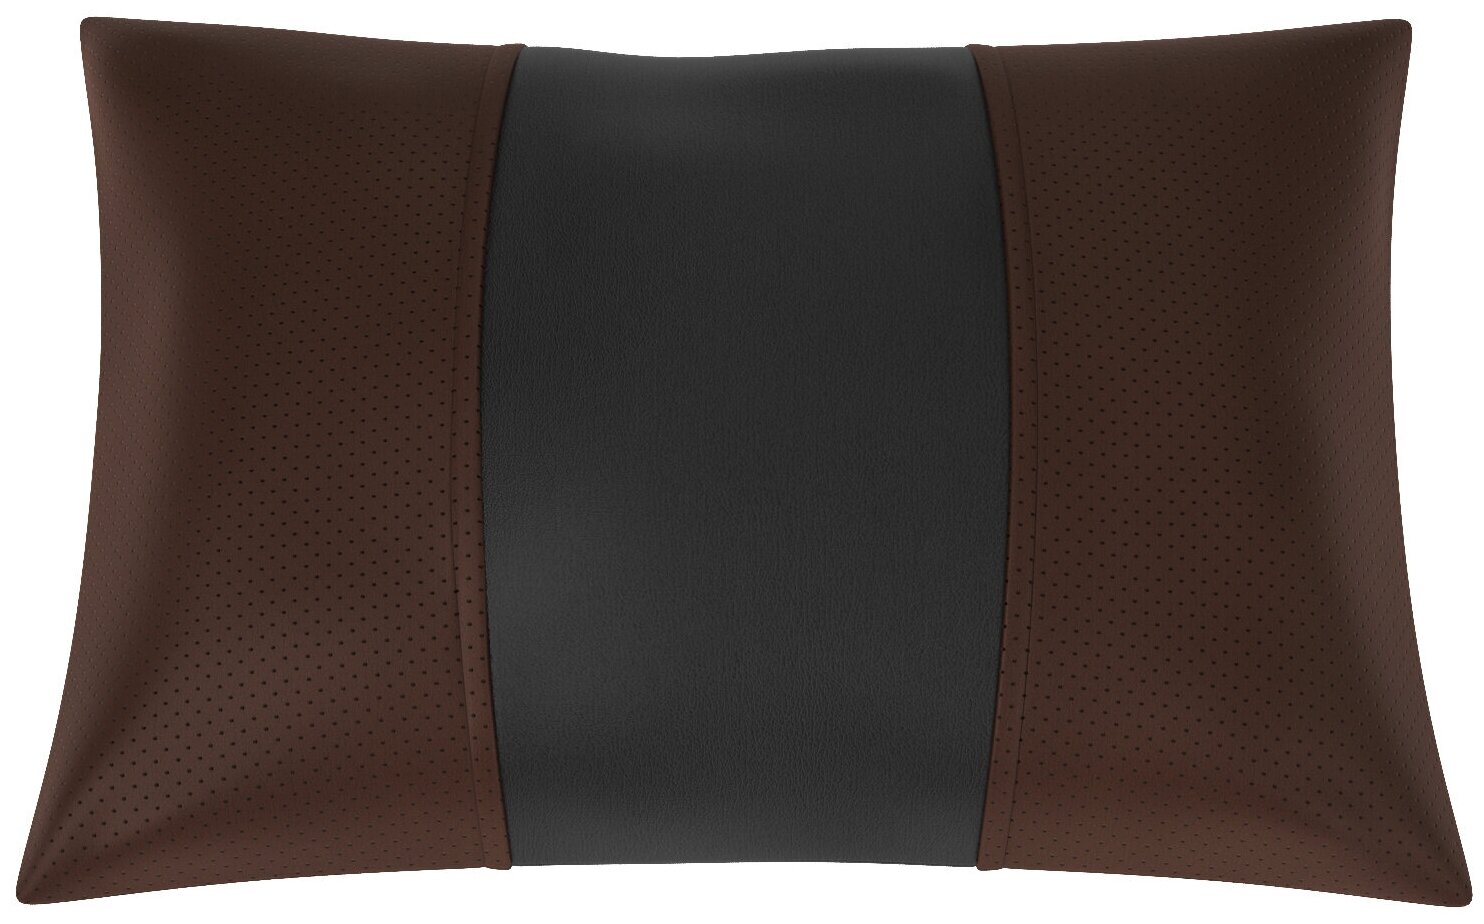 Автомобильная подушка для KIA Optima (Киа Оптима). Экокожа. Середина: чёрная гладкая экокожа. Боковины: шоколад экокожа с перфорацией. 1 шт.